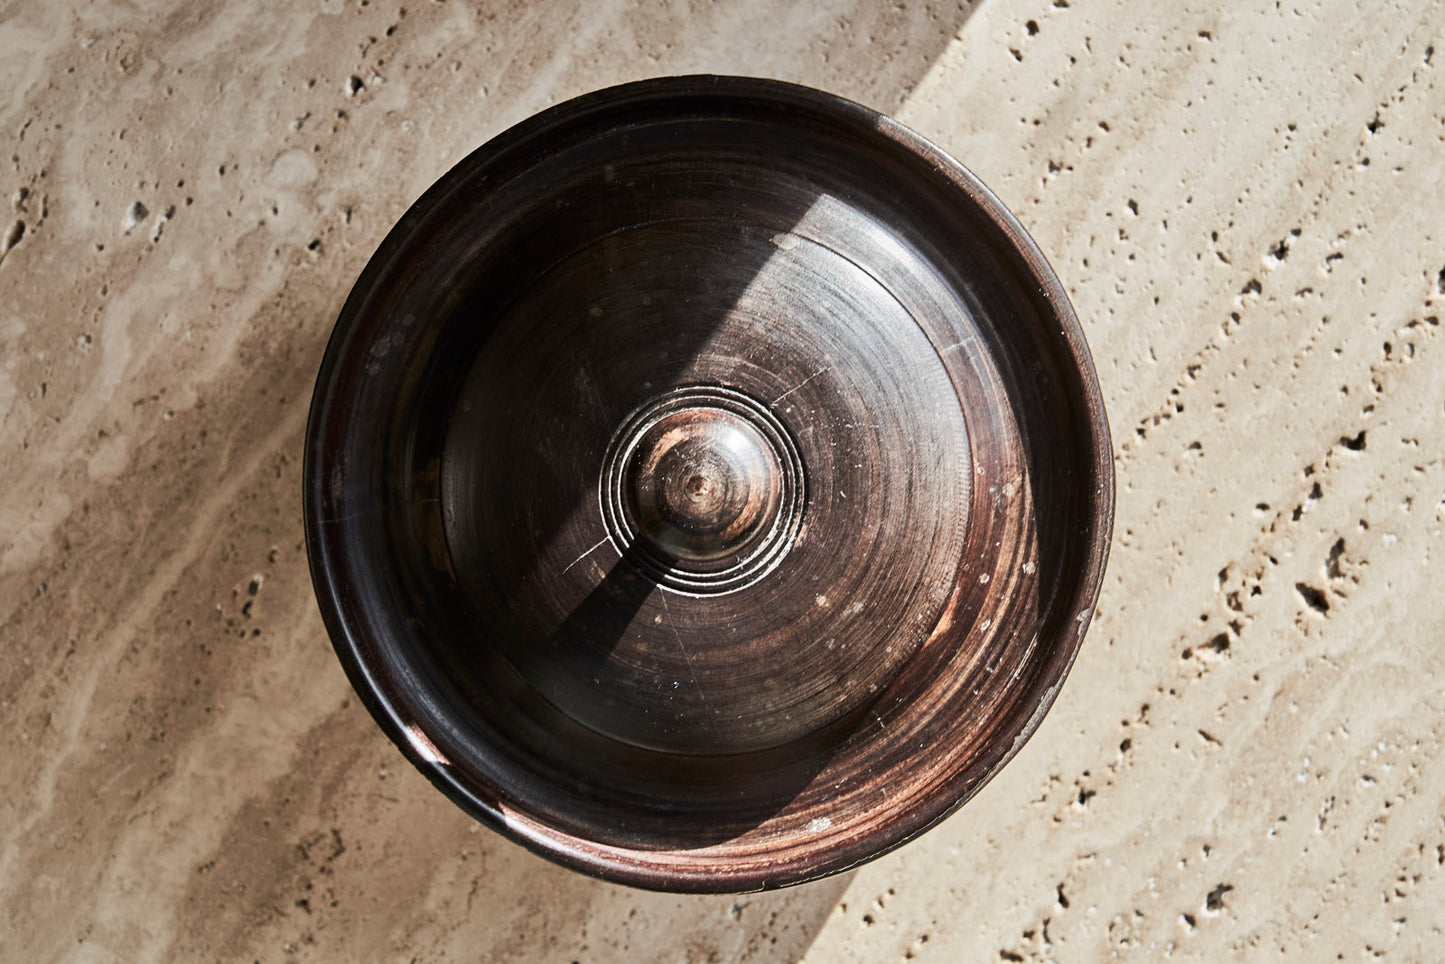 Antique Wooden Pot